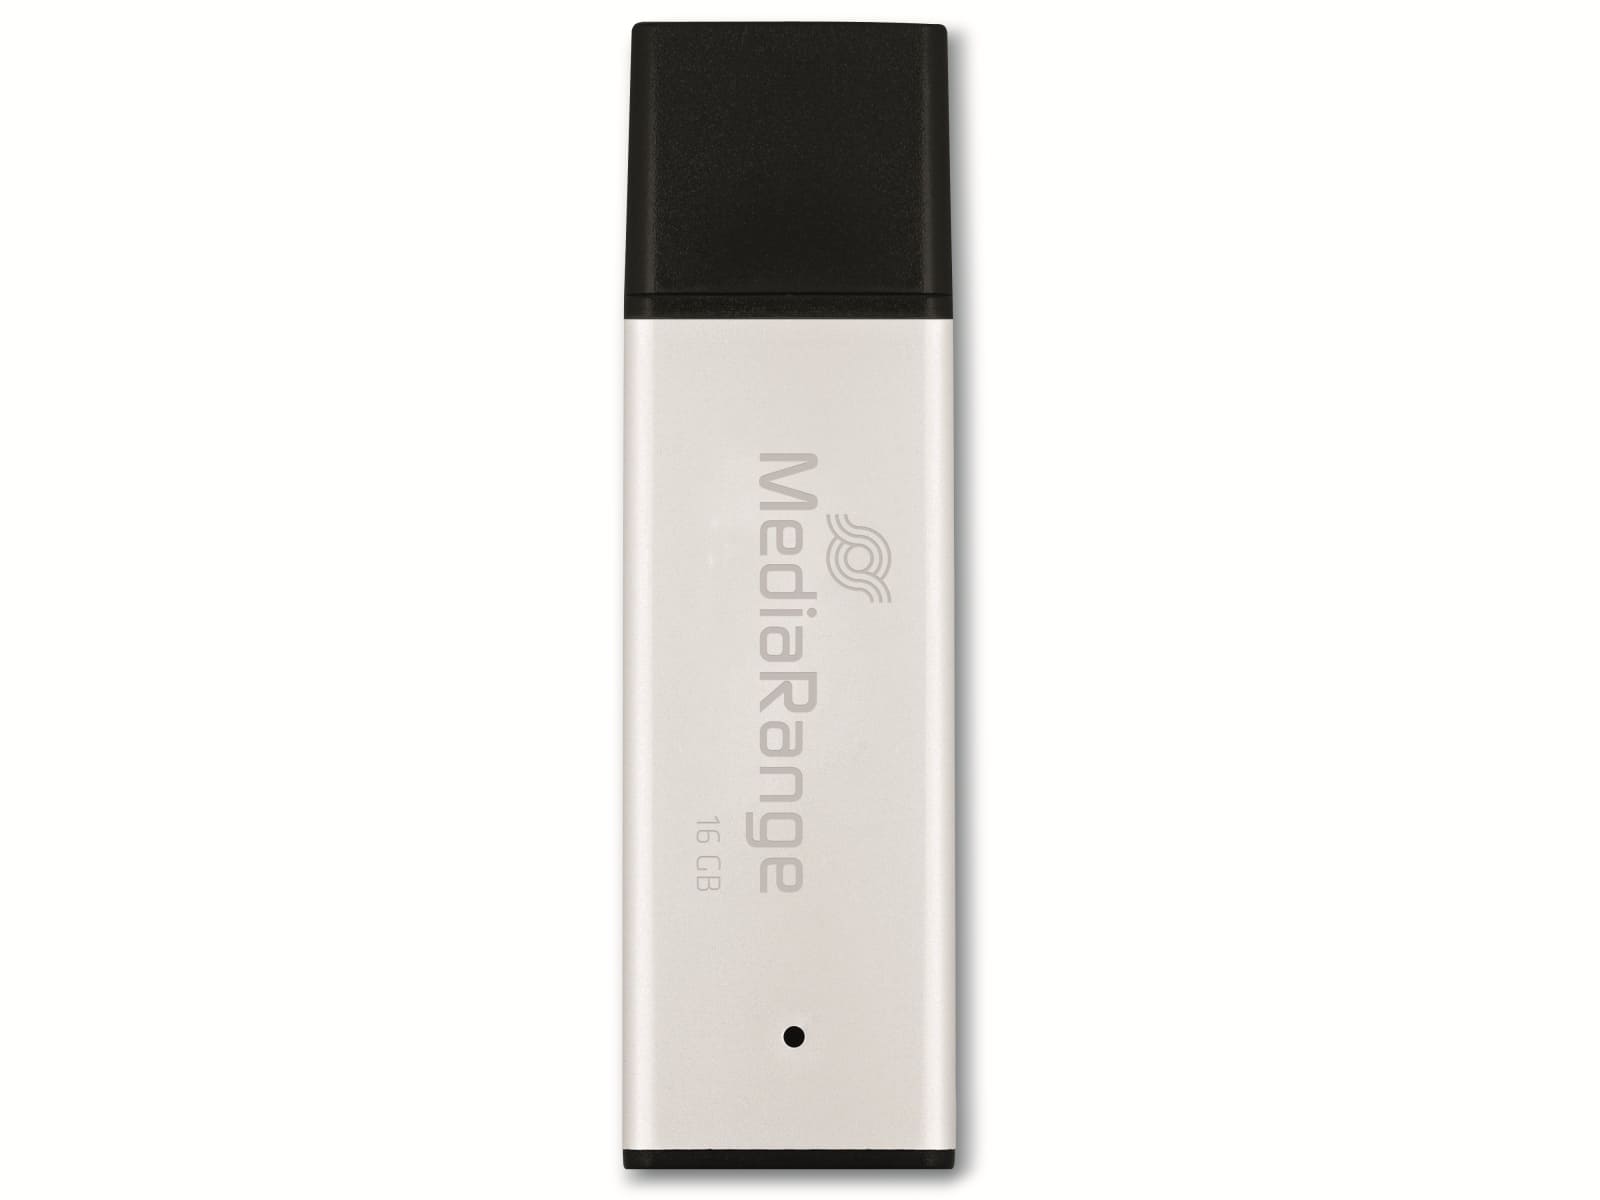 MEDIARANGE USB-Stick MR1899, USB 3.0, 16 GB